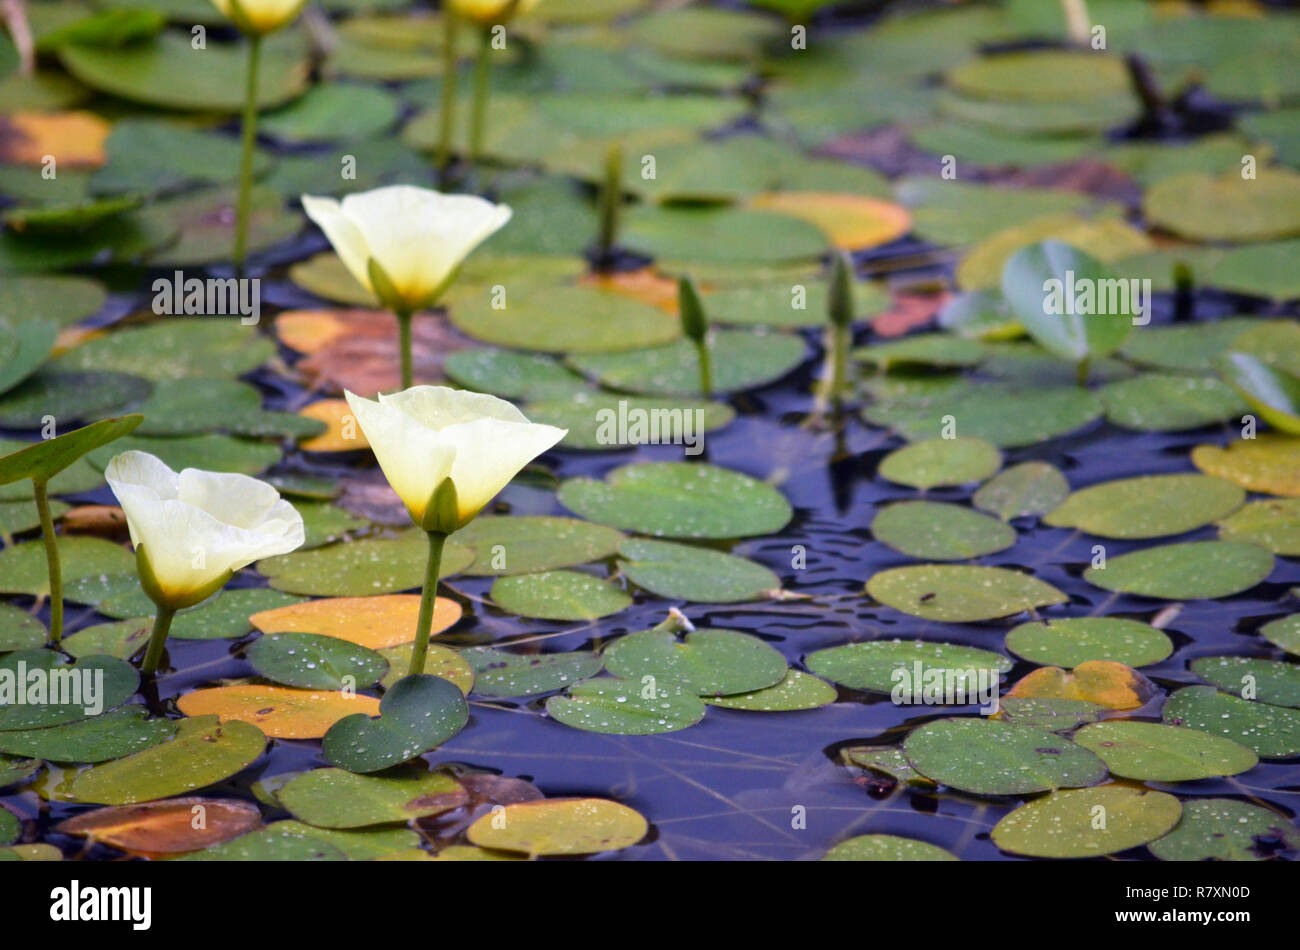 Las flores amarillas de la amapola de agua acuática Hydrocleys nymphoides, familia Alismataceae, creciendo en el río de Hacking, Royal National Park, Sydney. Foto de stock